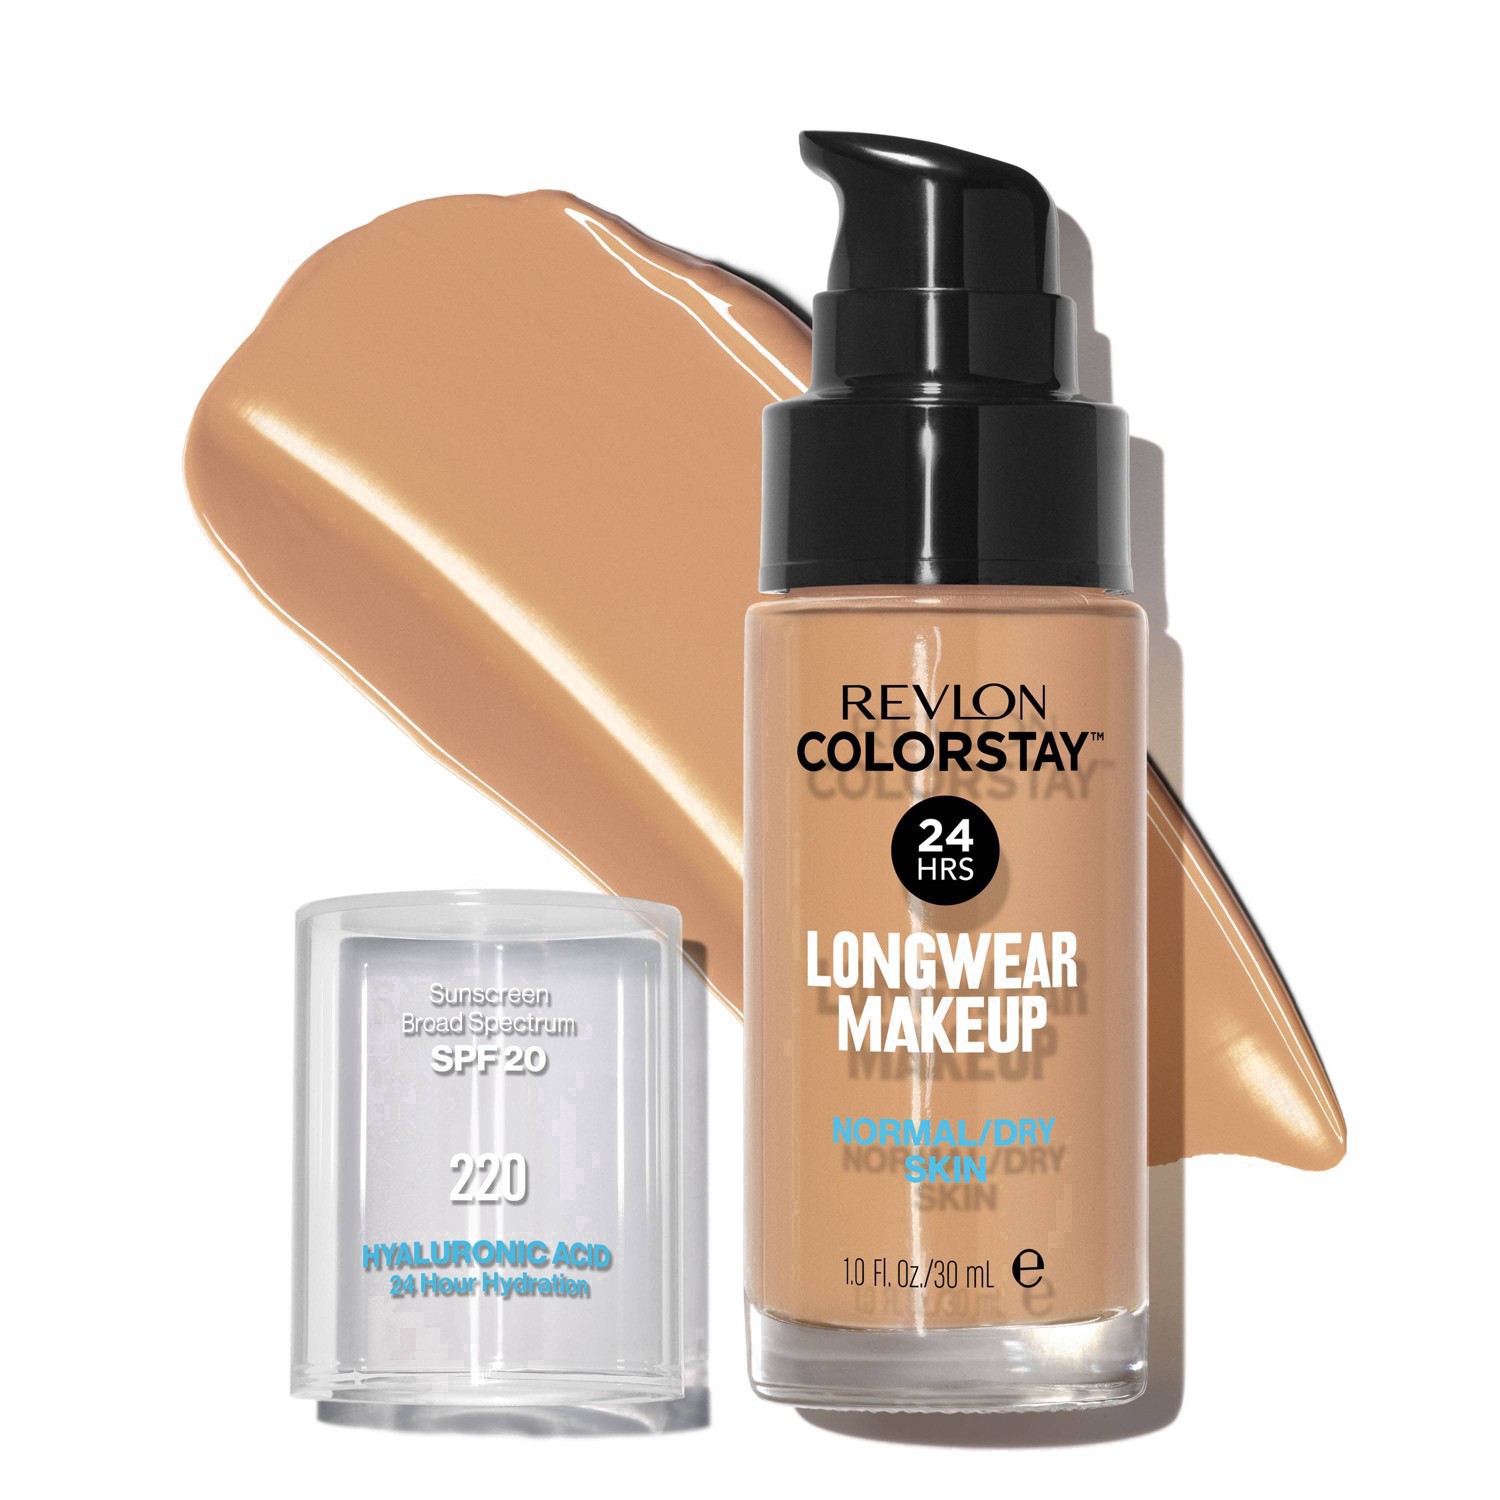 slide 50 of 69, Revlon ColorStay Makeup for Normal/Dry Skin with SPF 20 - 220 Natural Beige - 1 fl oz, 1 fl oz